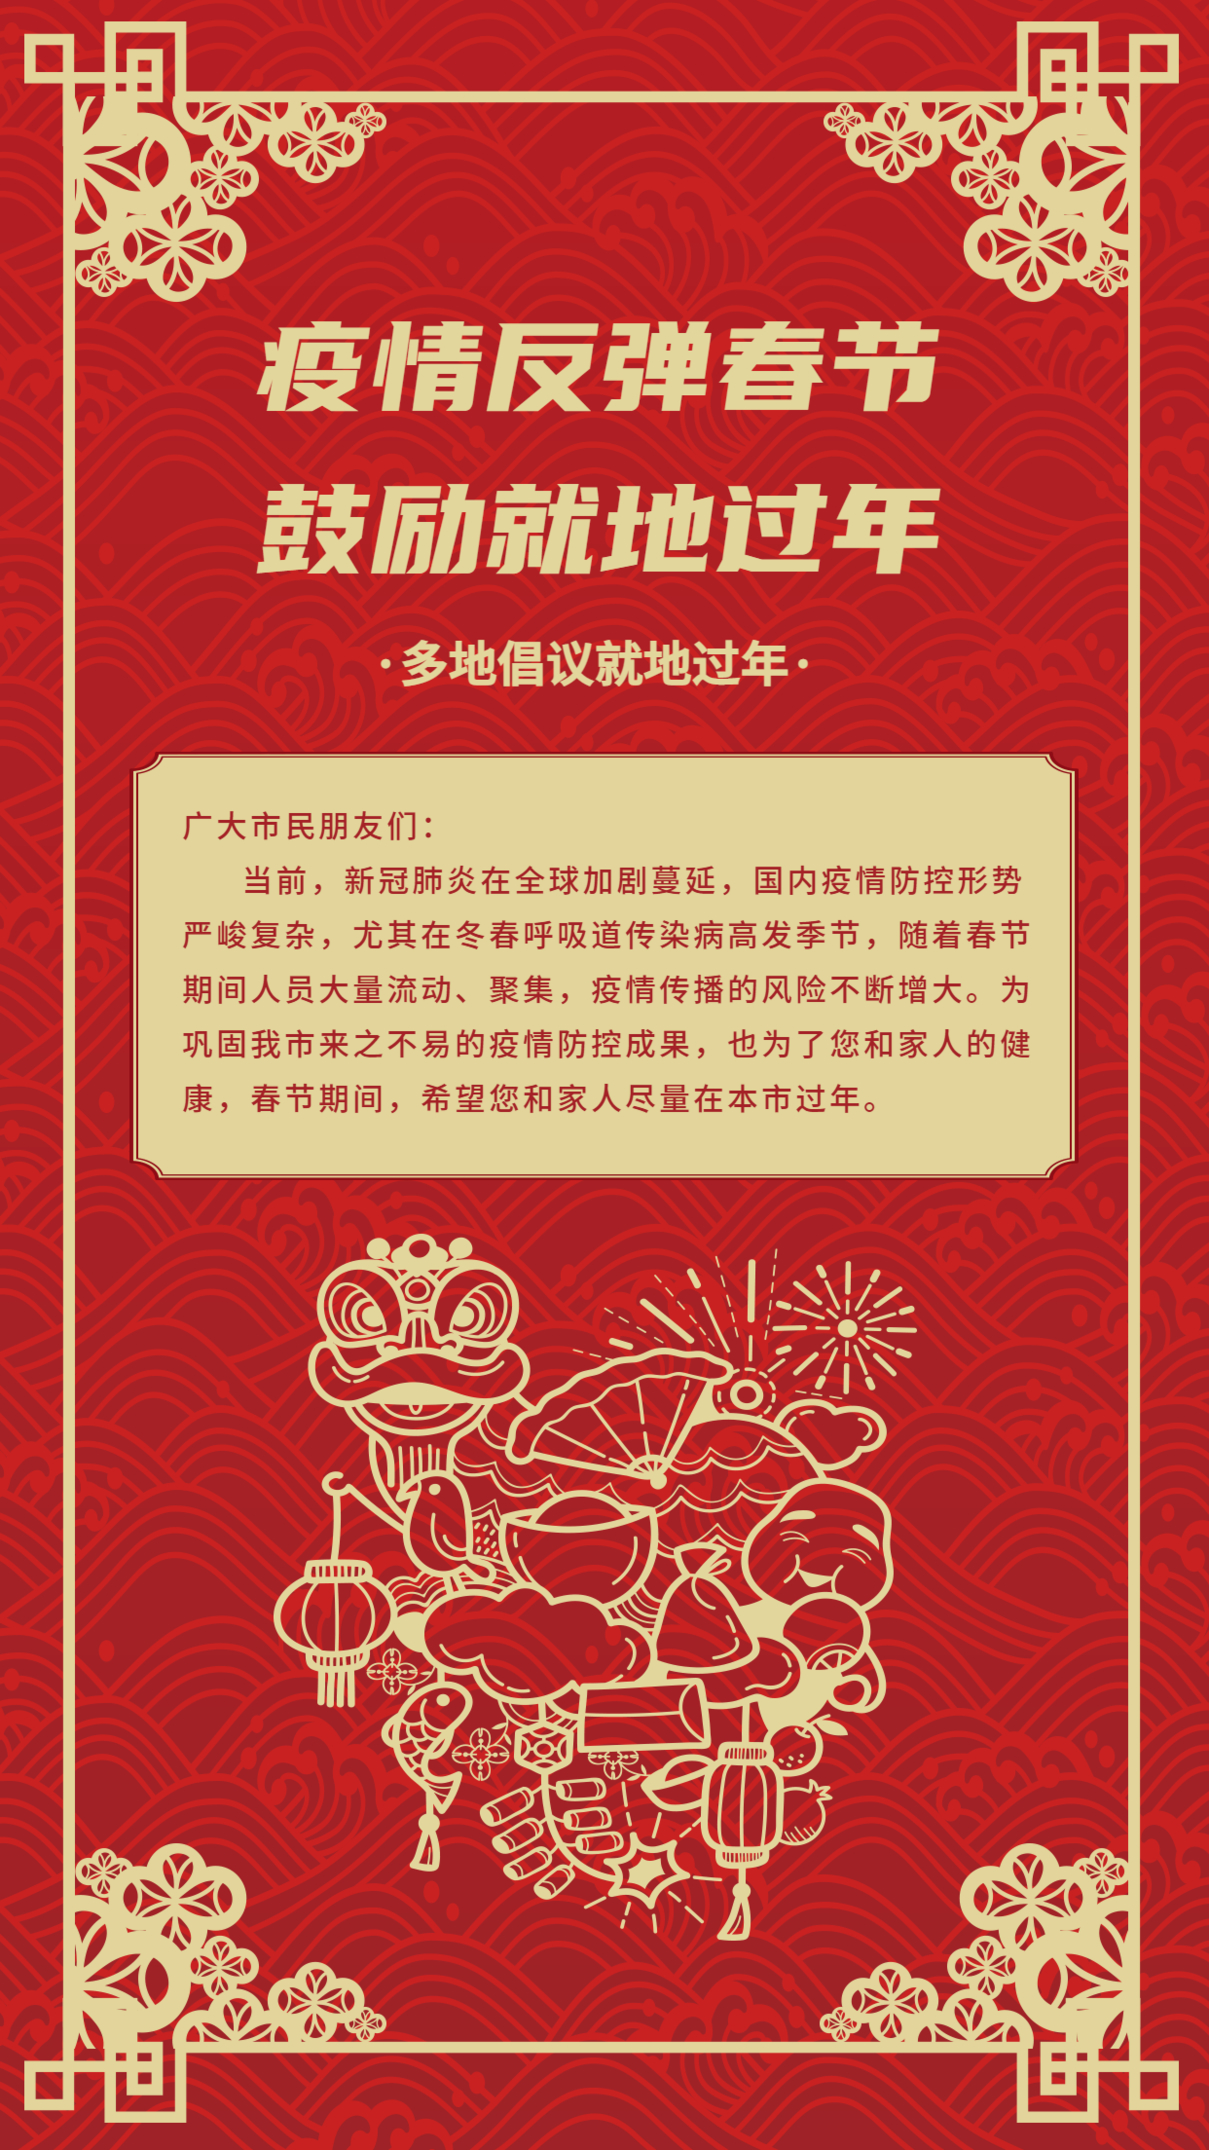 疫情反弹春节鼓励就地过年新年背景不返乡插画手机海报